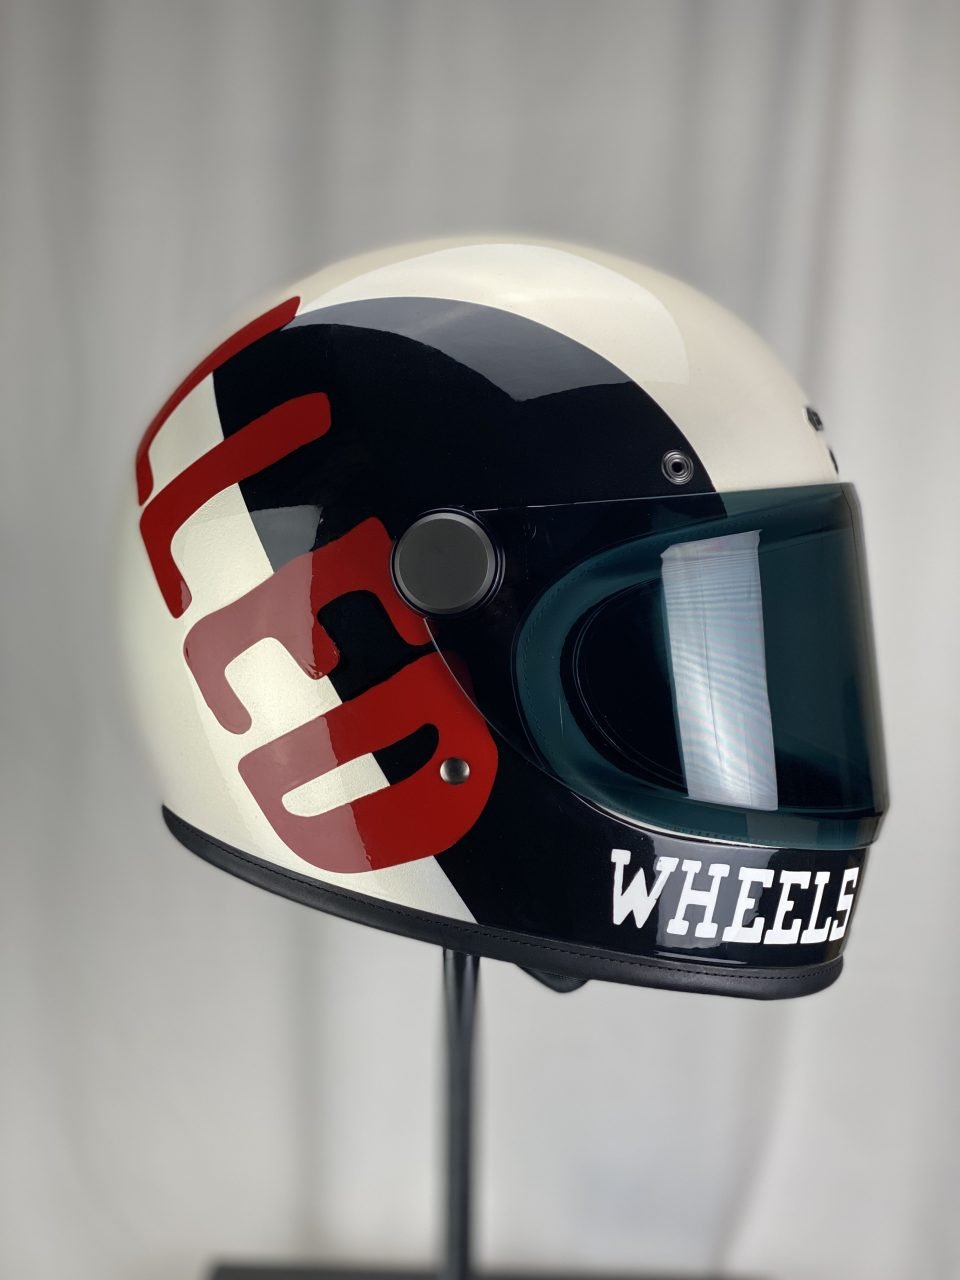 indian motorcycle wheels & waves helmet